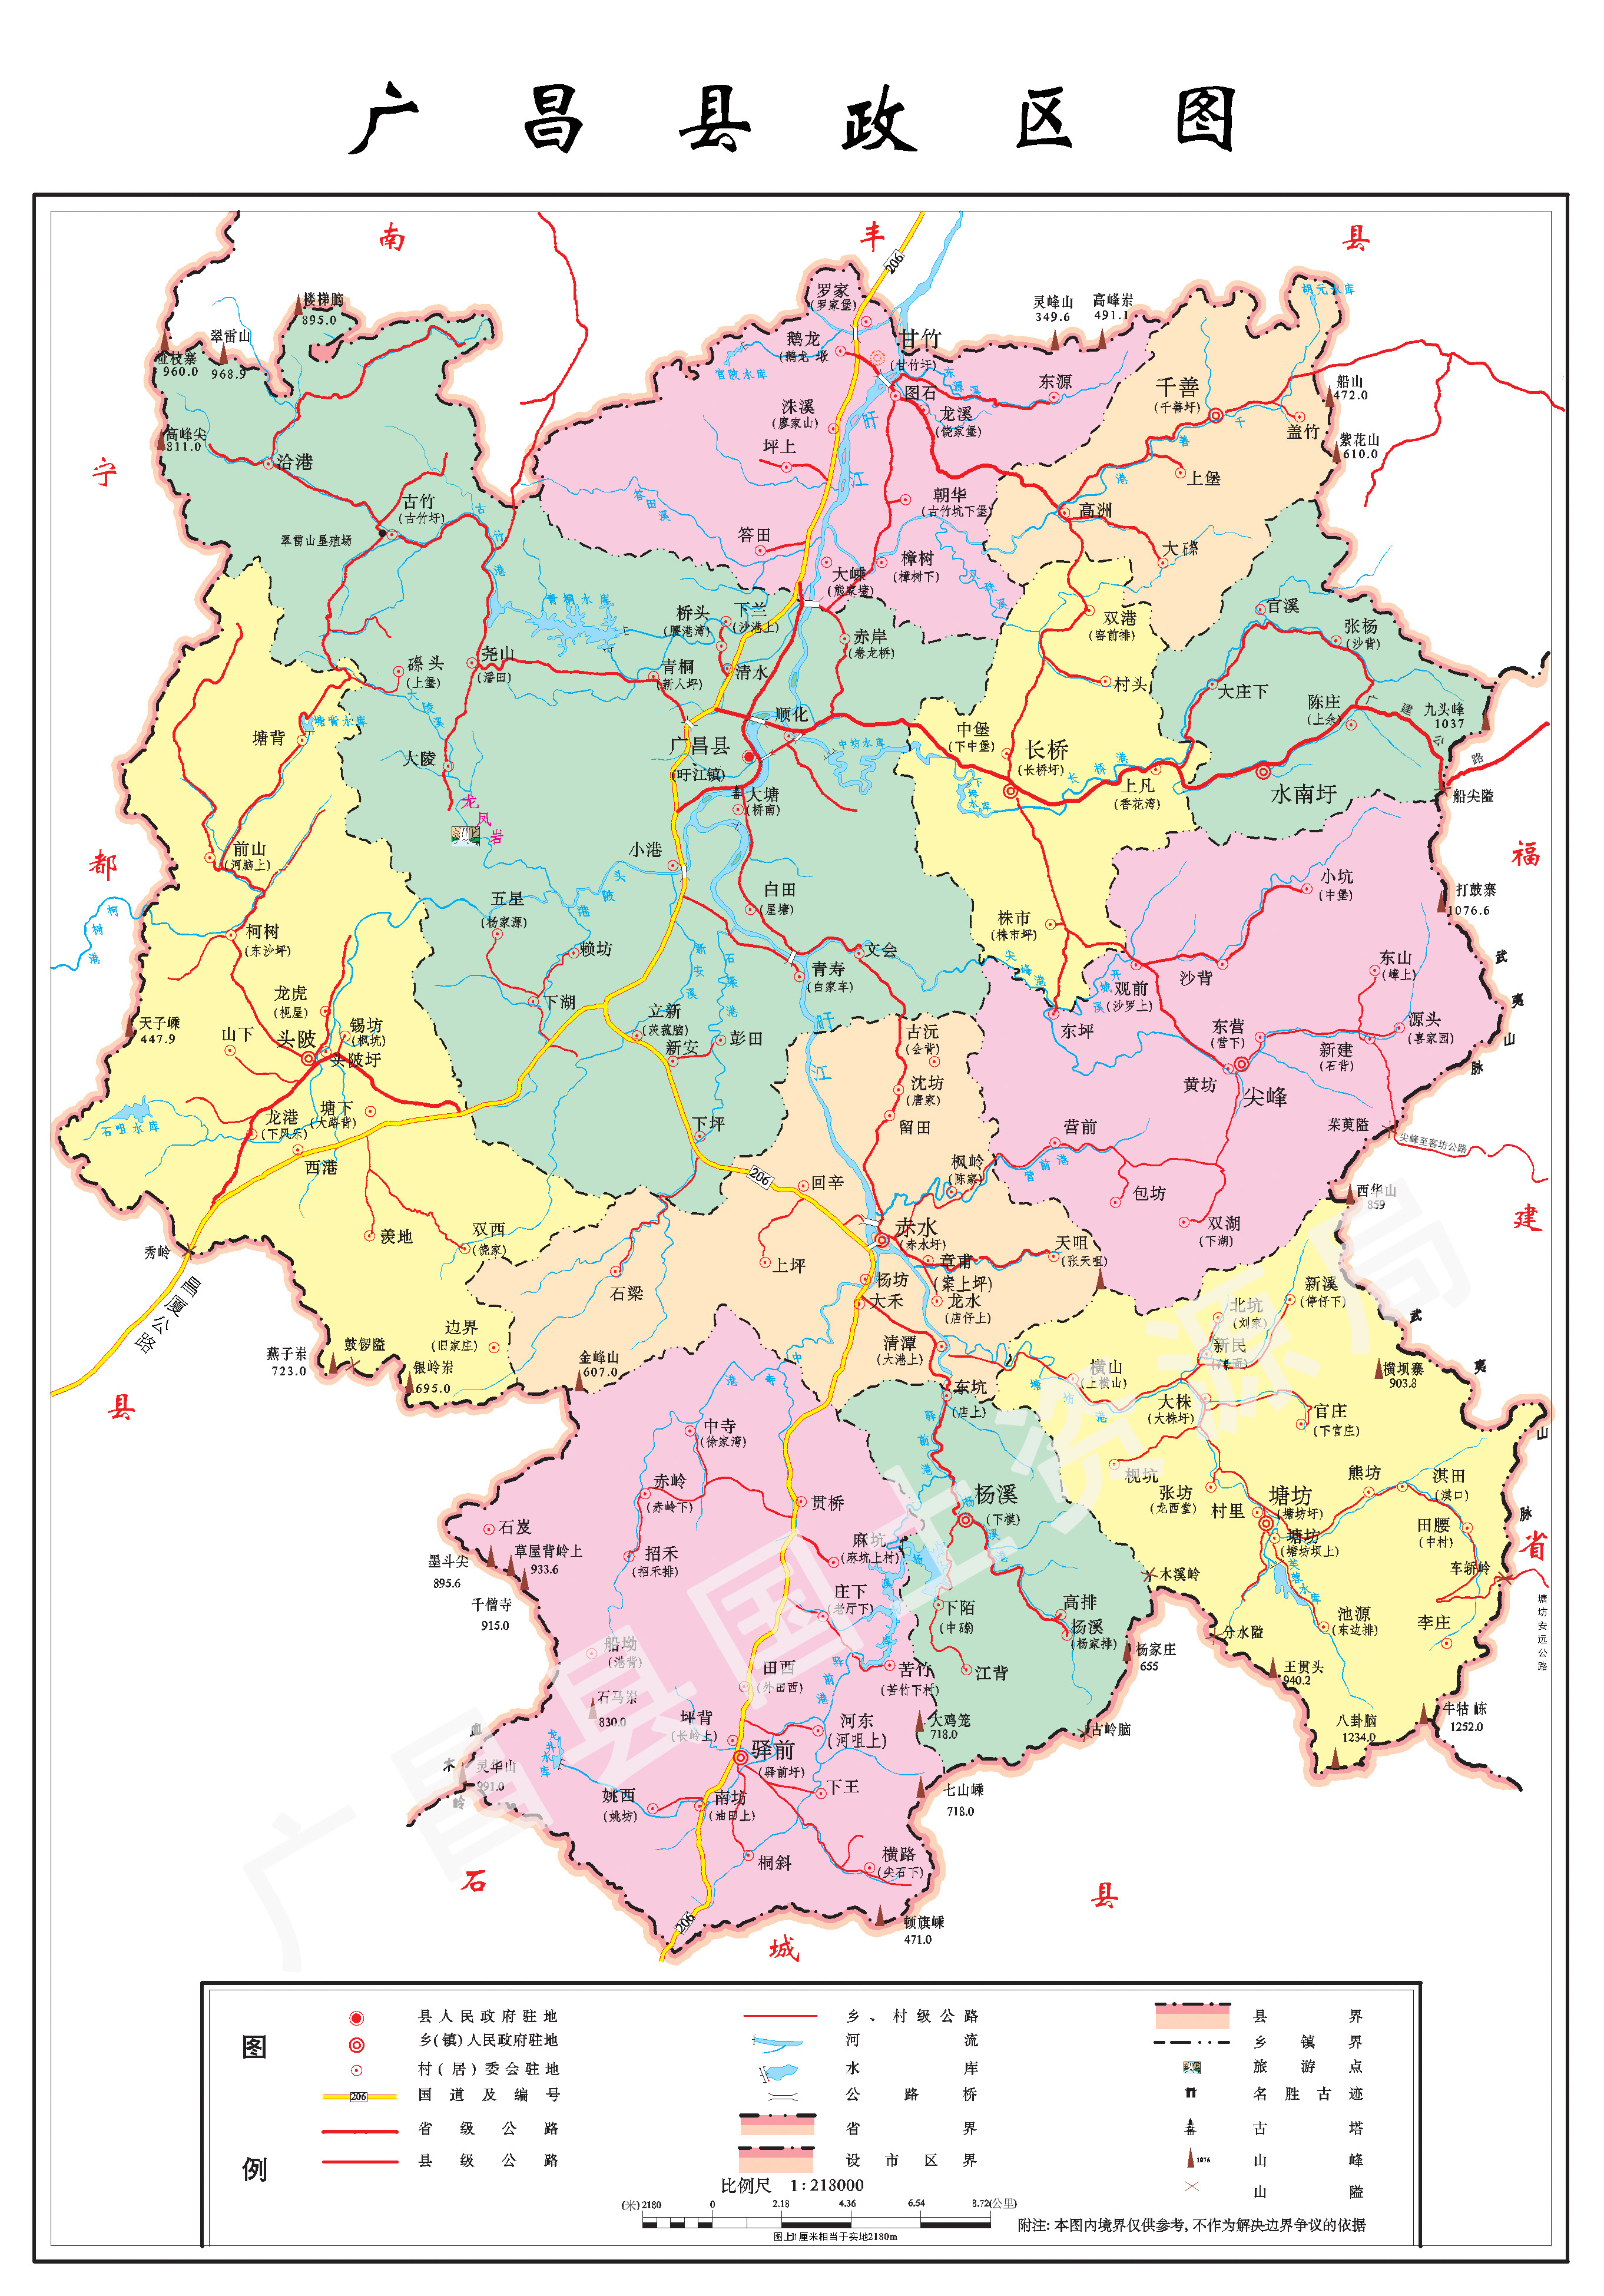 南部 广昌县政区图  北部各省区市相关的区划地图帖总索引http://bbs.图片